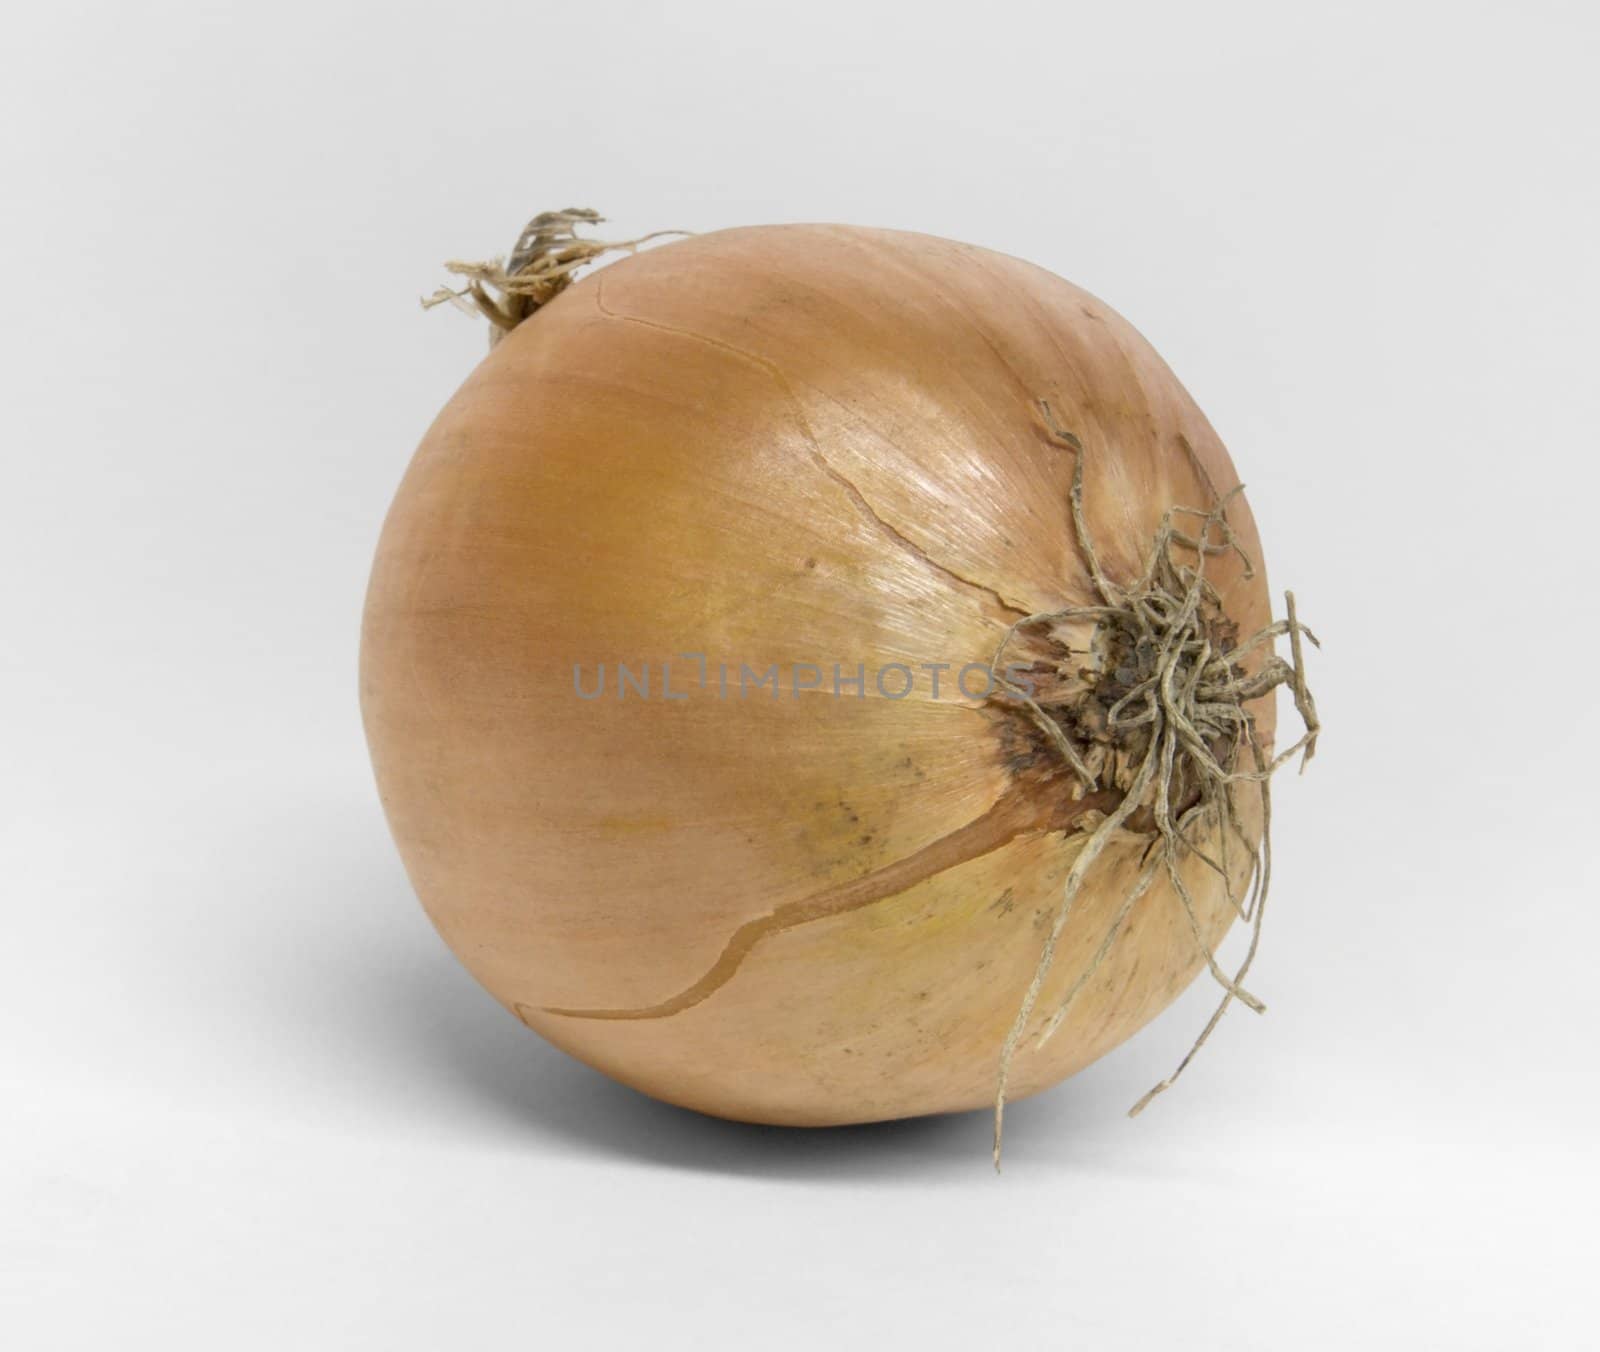 single onion on desk in light grey back